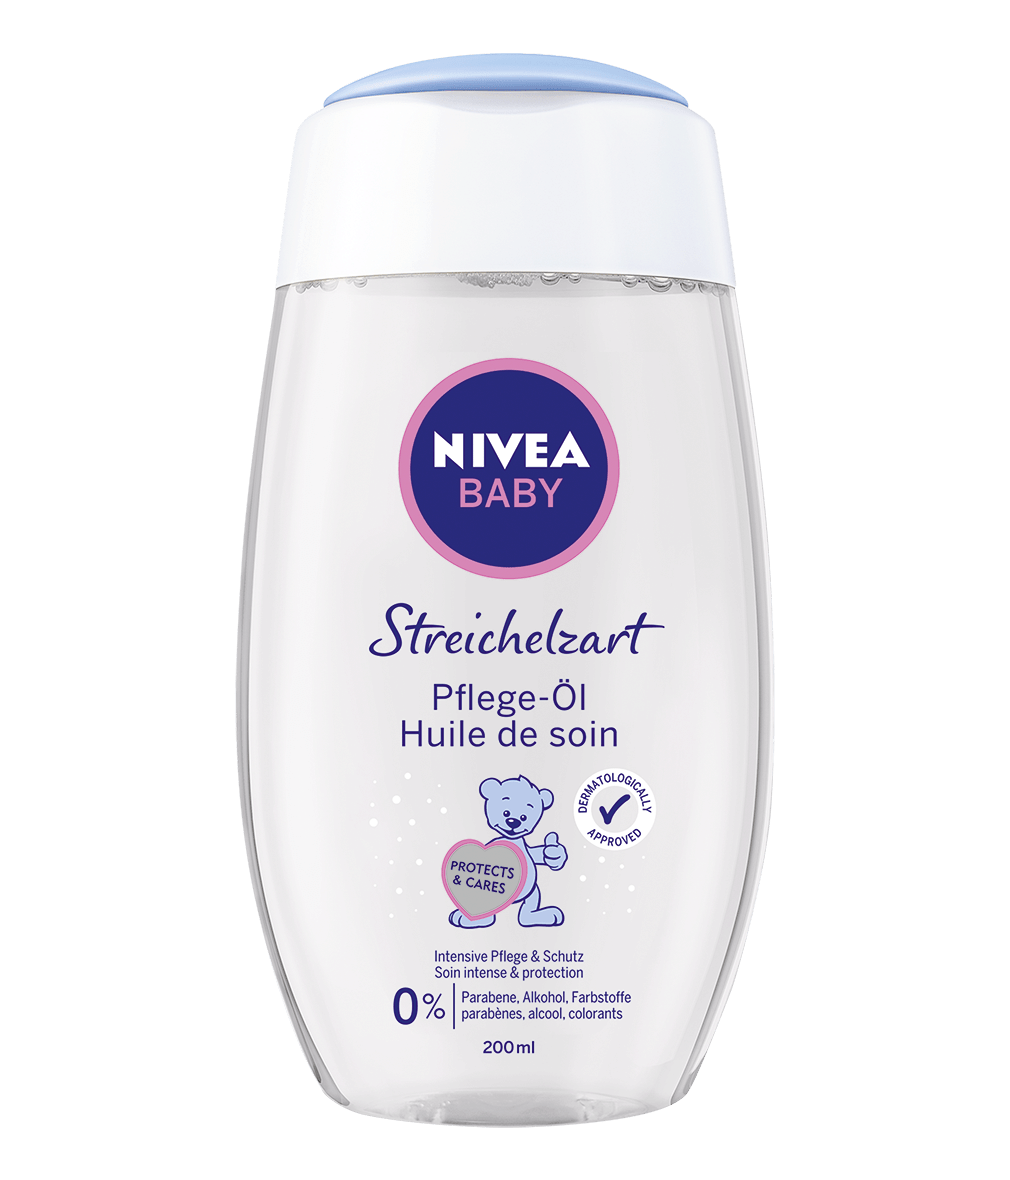 NIVEA Baby Streichelzart Pflege-Öl